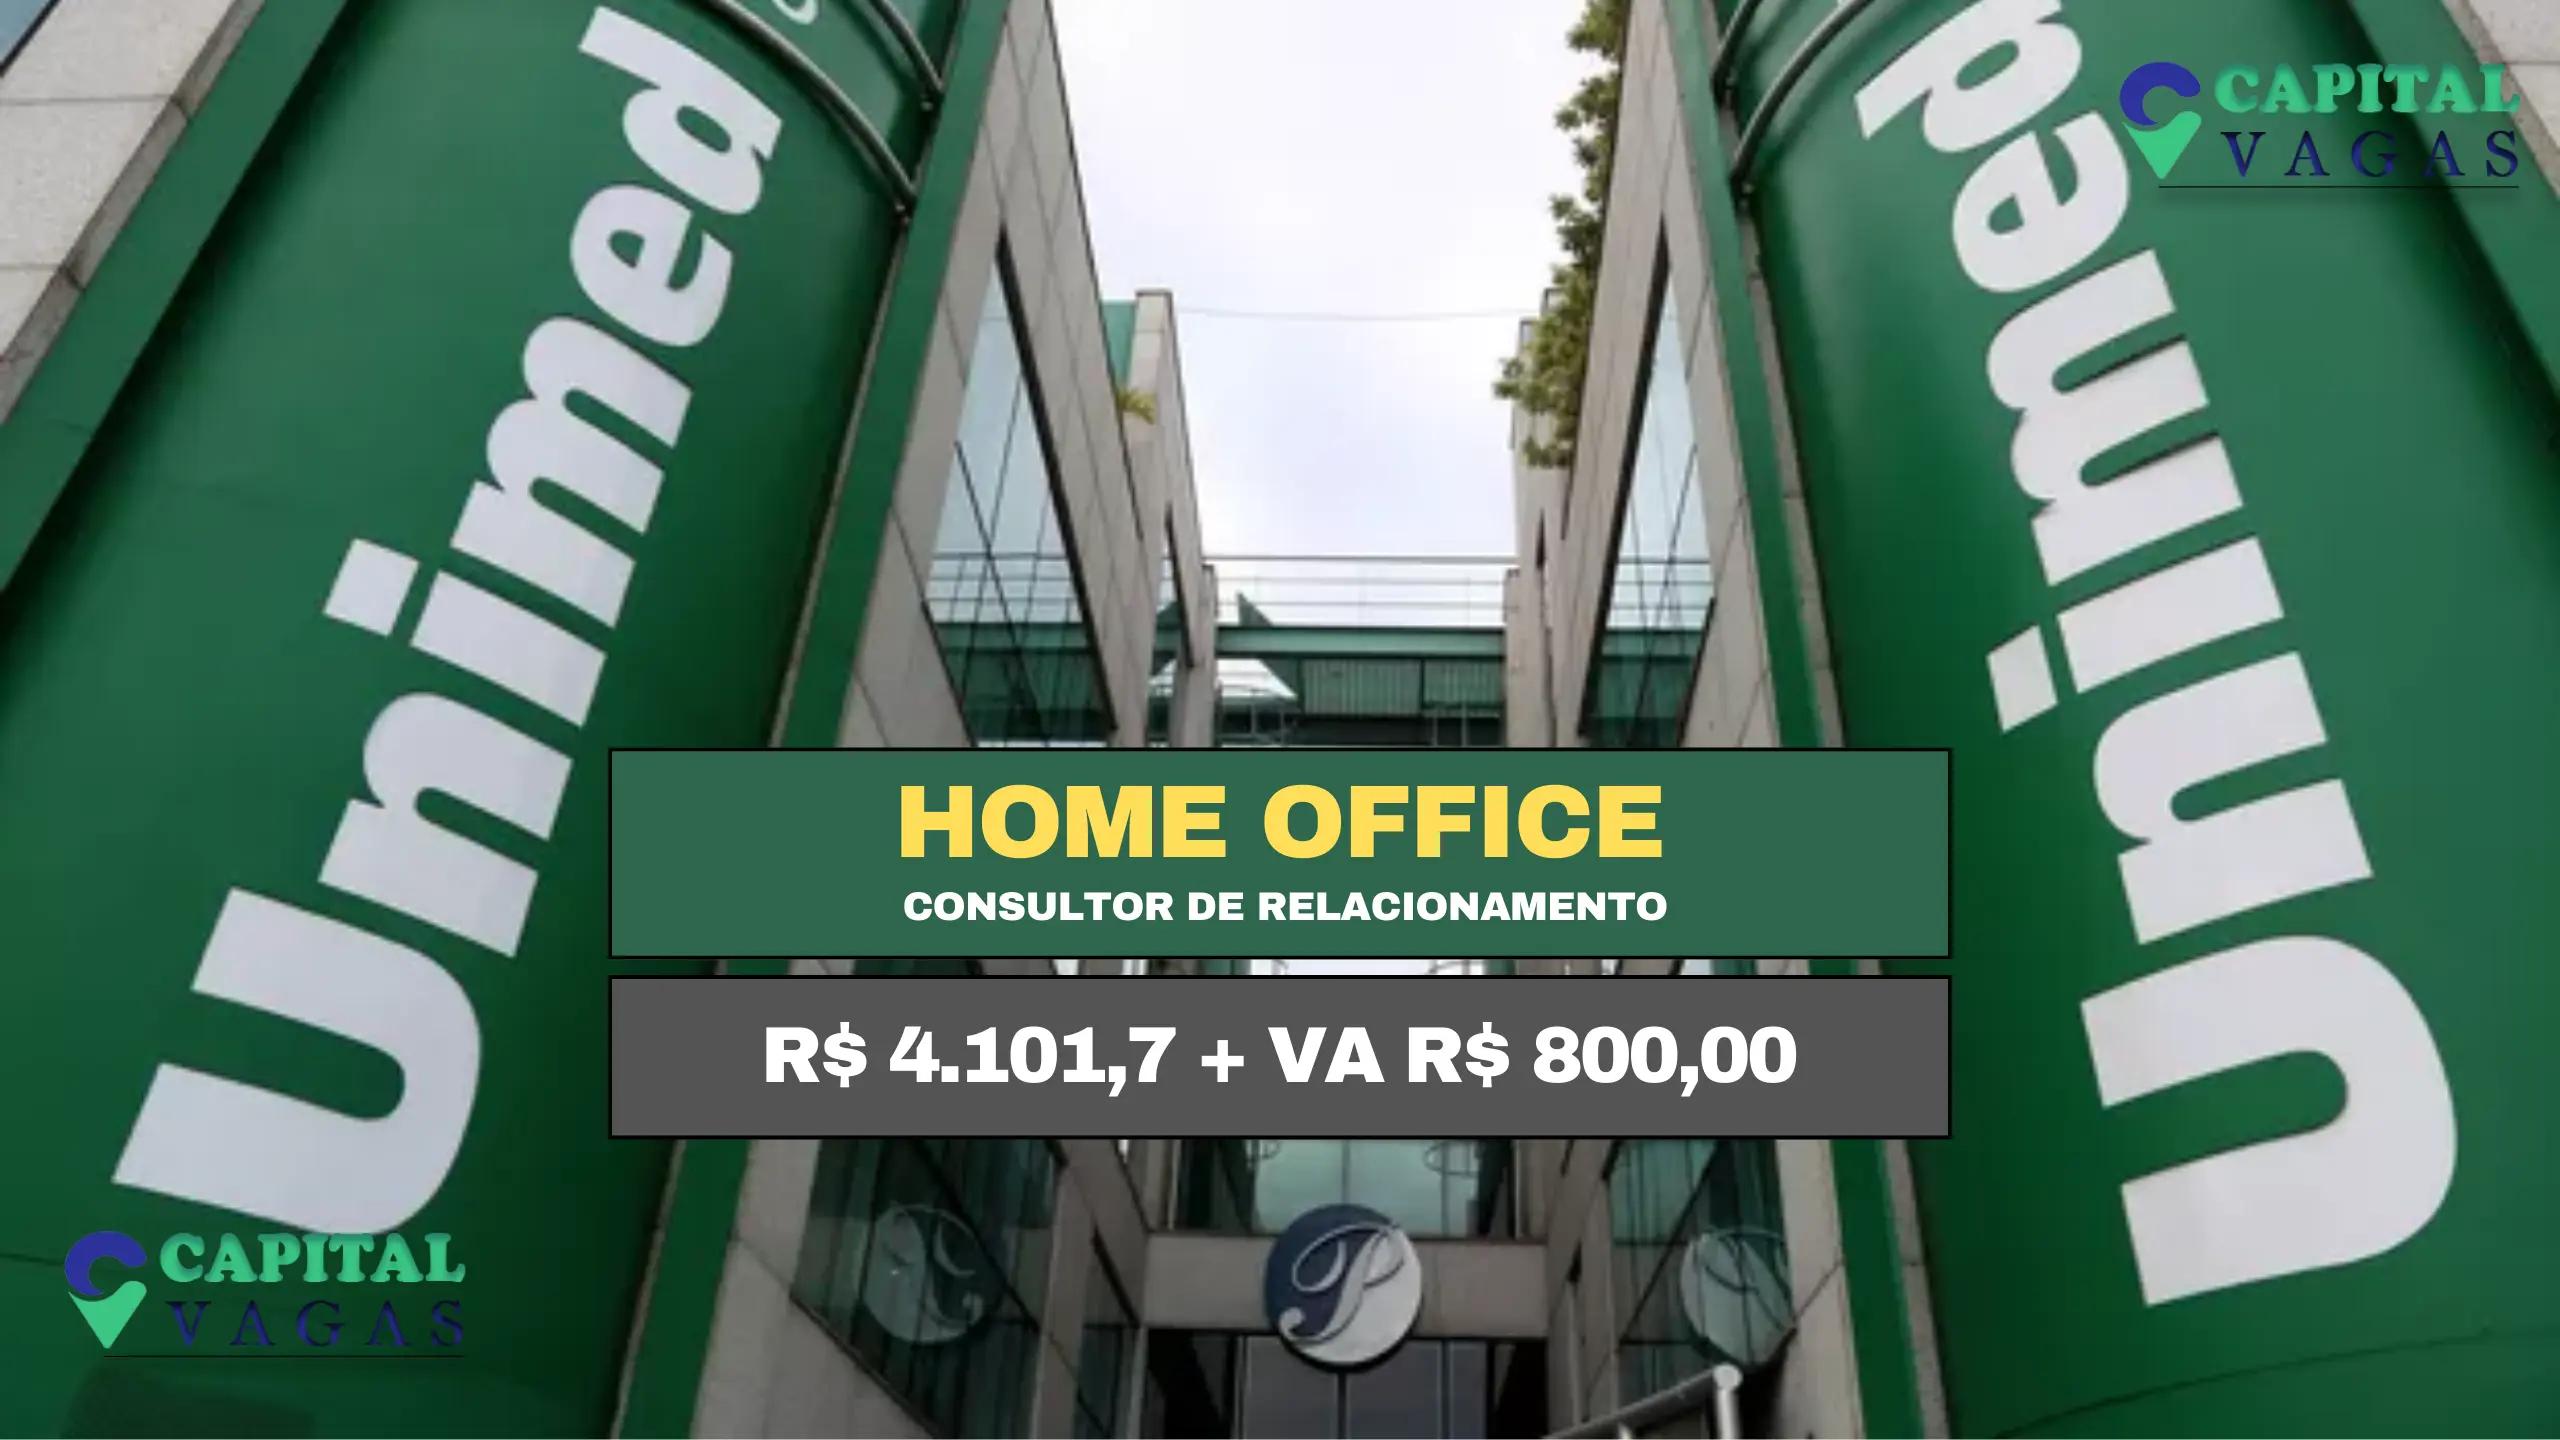 Unimed abre vaga HOME OFFICE para Consultor com Remuneração de R$ 4.101,7 e Alimentação R$ 800,00